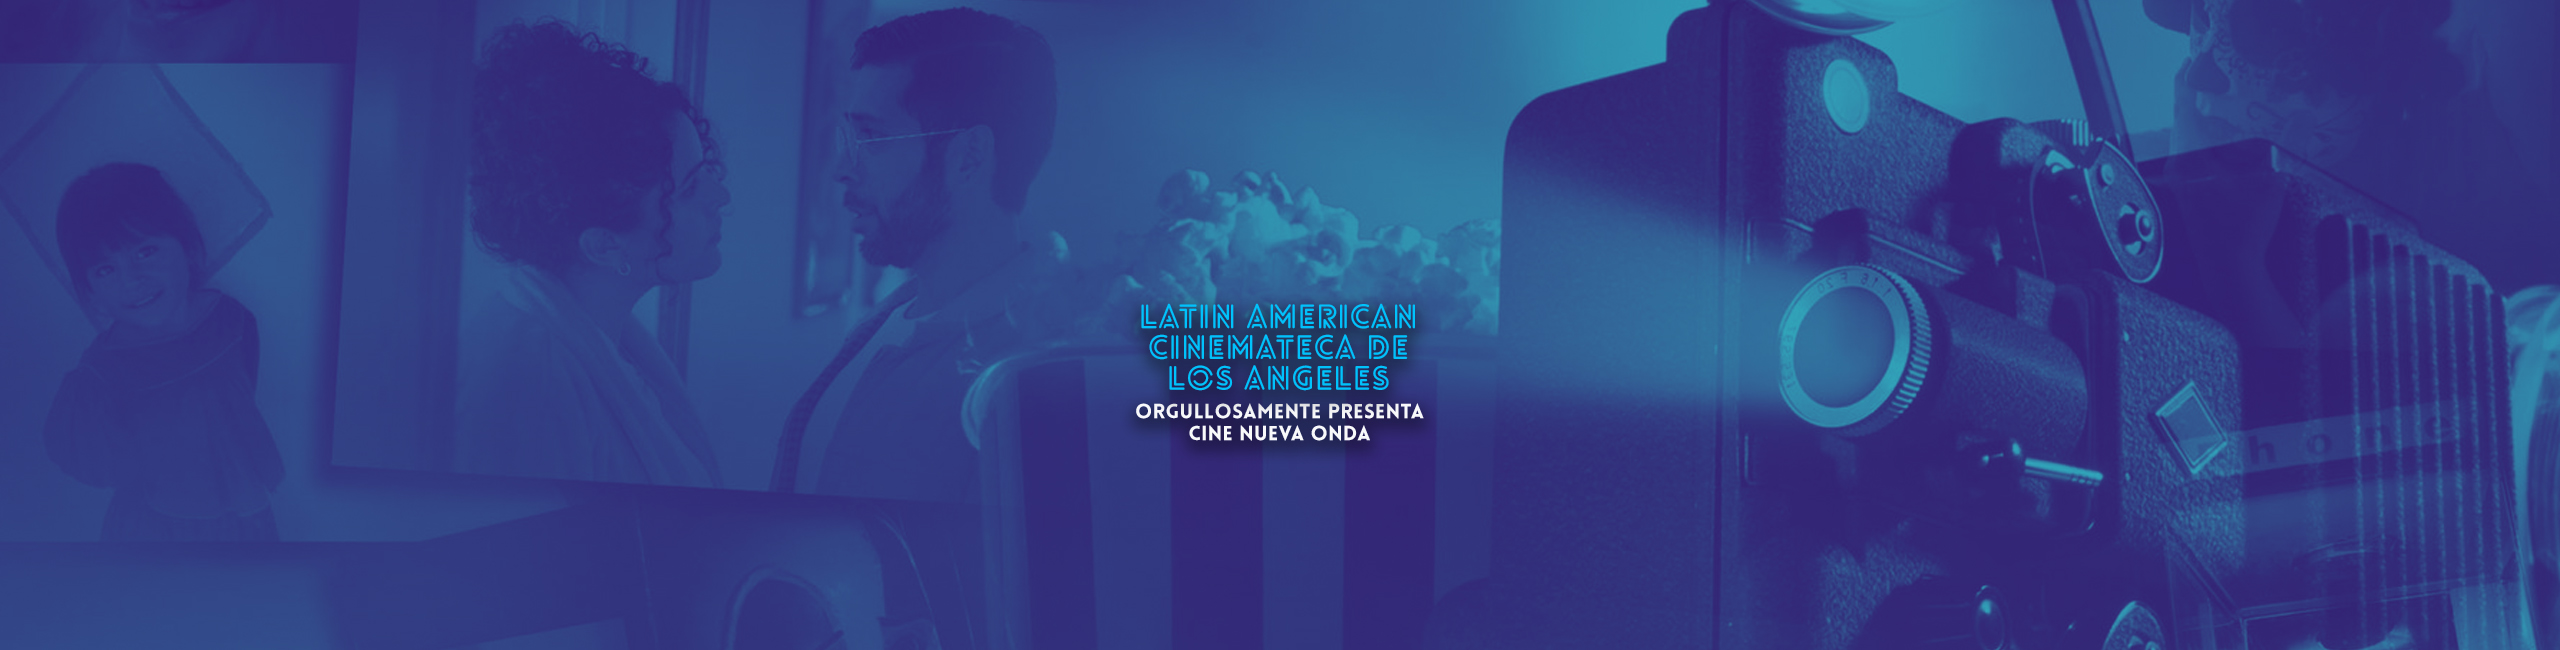 Latin American Cinemateca de Los Angeles orgullosamente presenta Cine Nueva Onda